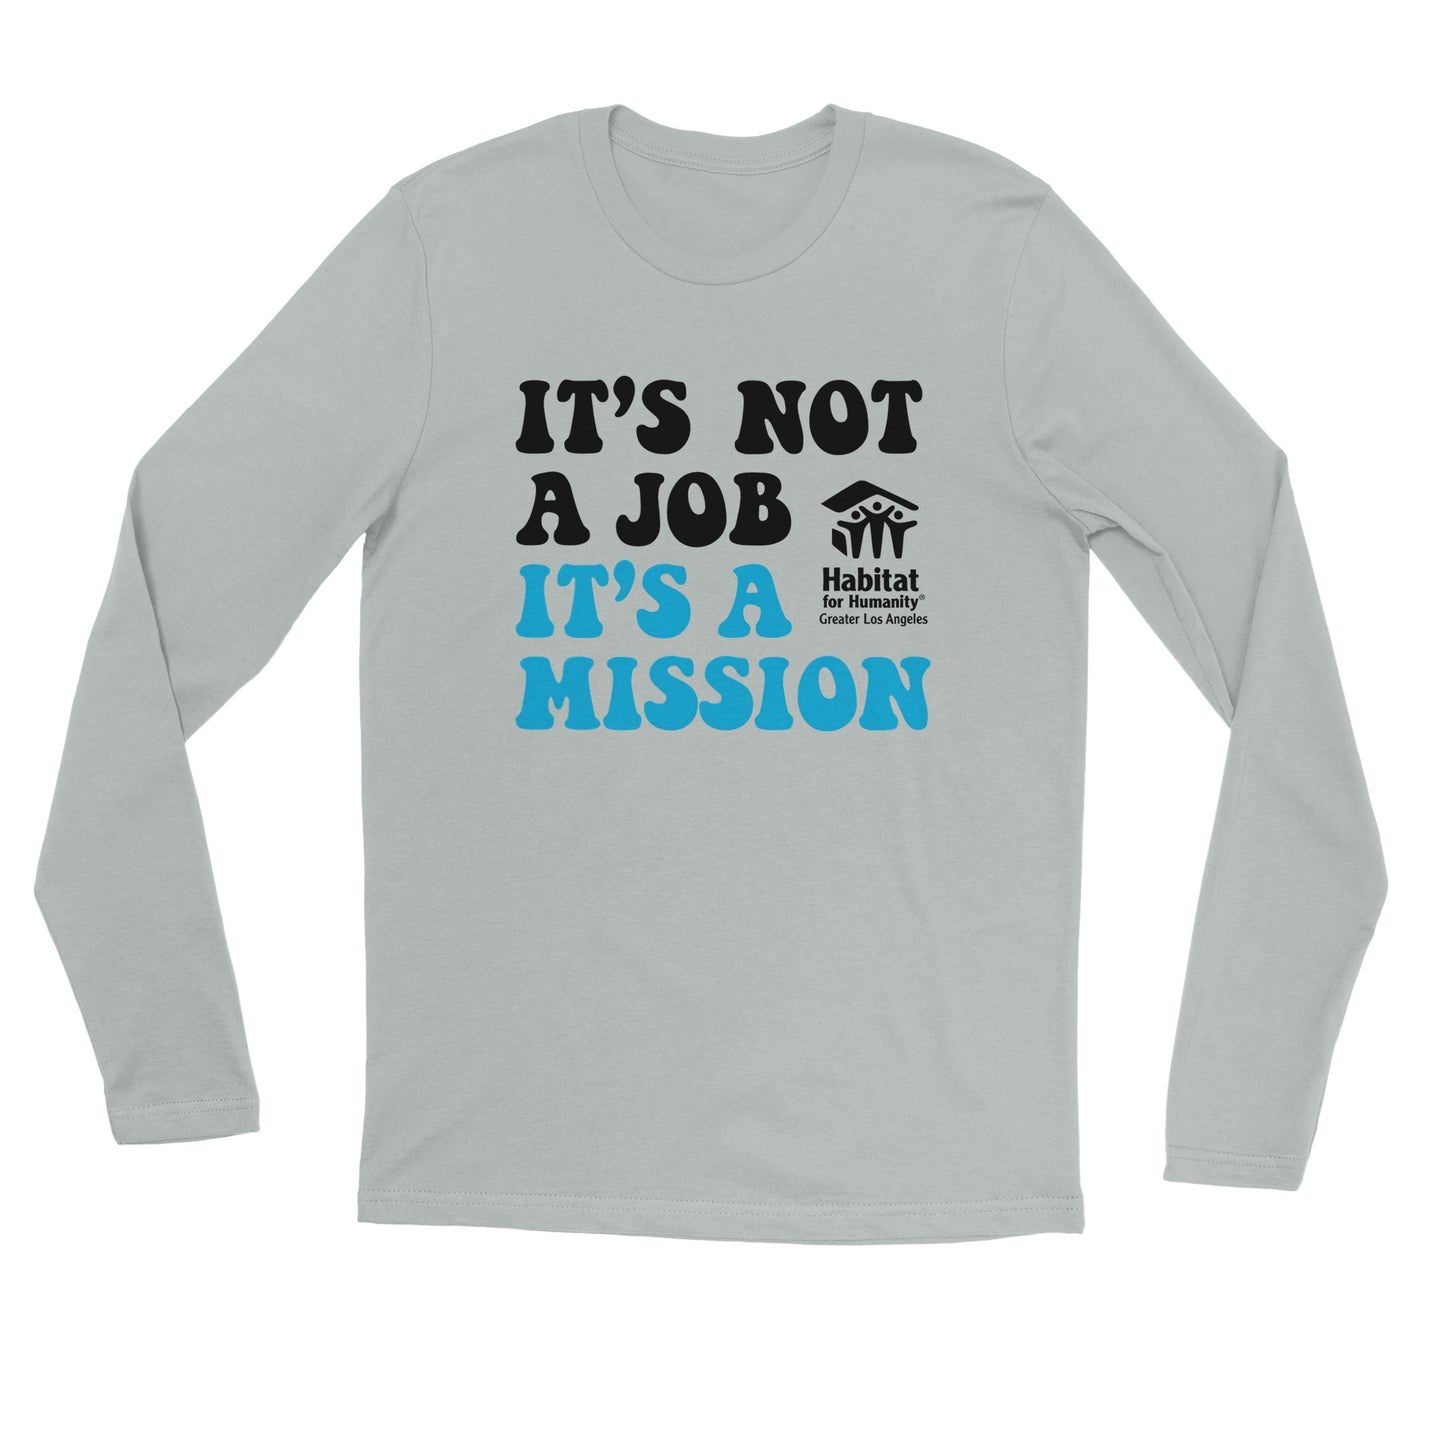 "It's a Mission" Premium Unisex Longsleeve T-shirt